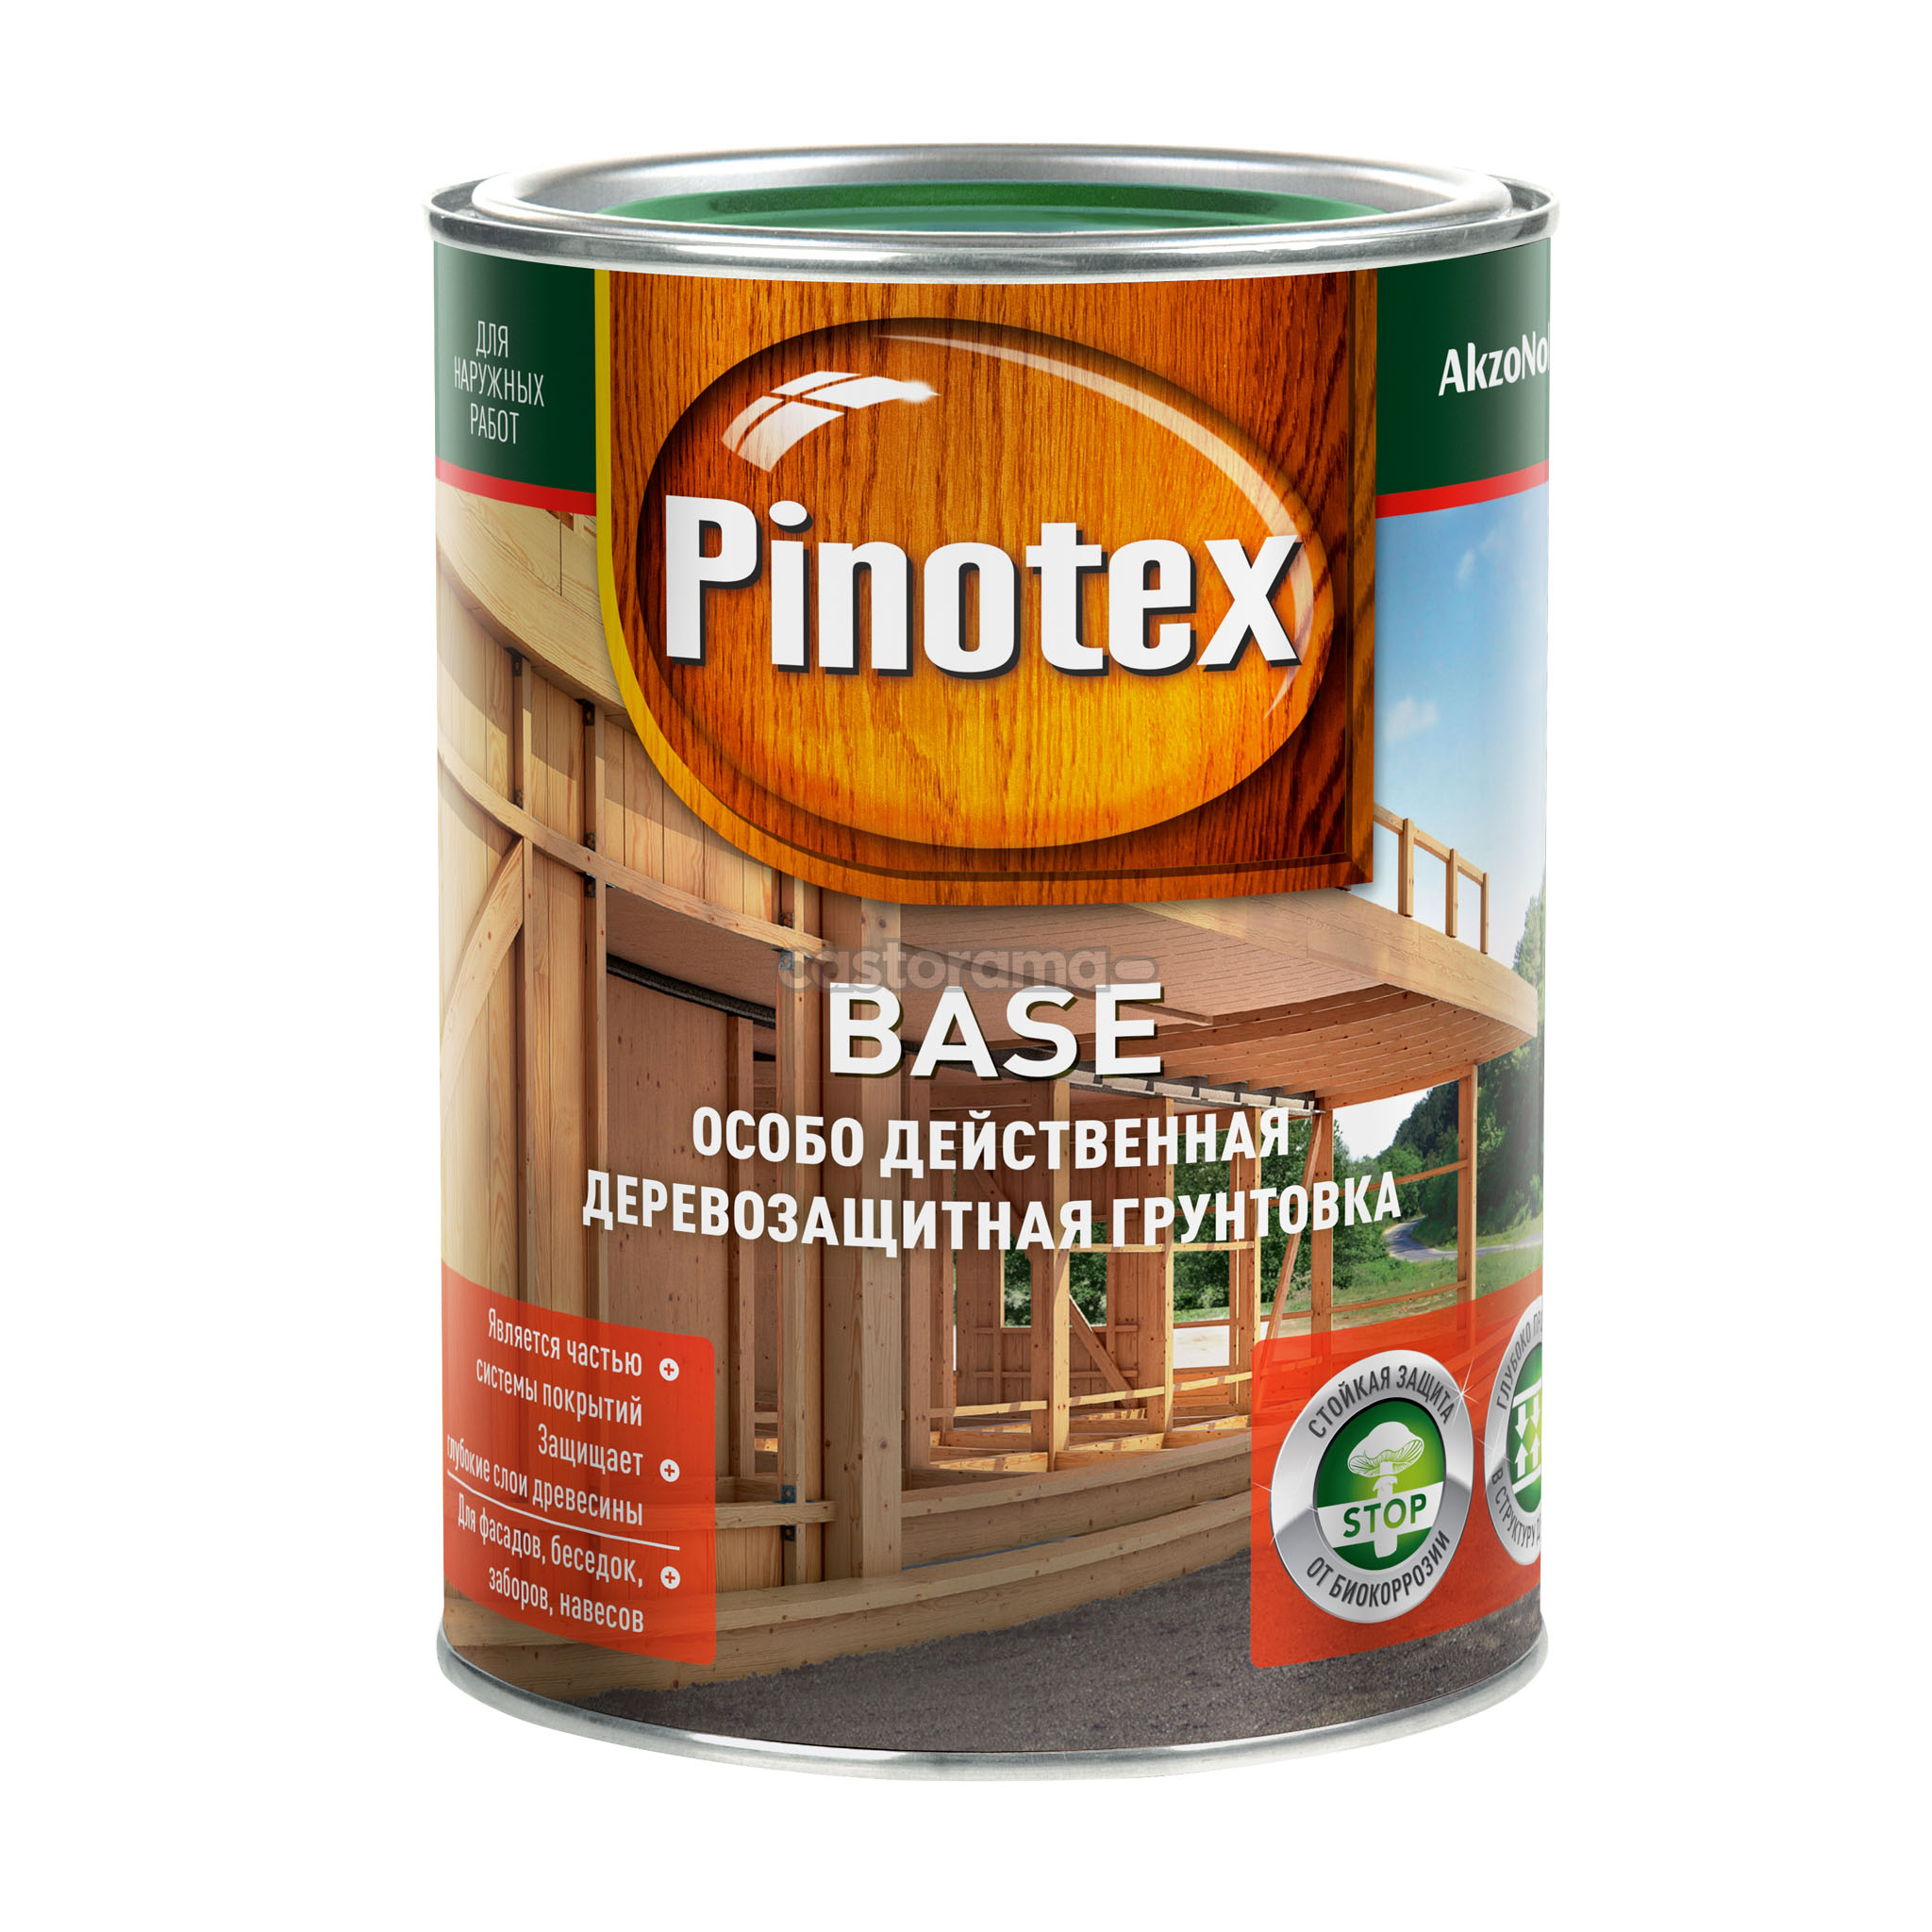 Pinotex. Грунтовка Base 9л.. Pinotex. Грунтовка Base 1л.. Грунтовка для дерева Pinotex Base, 2,7 л. Pinotex Пинотекс Base 1л. Купить пинотекс для дерева для наружных